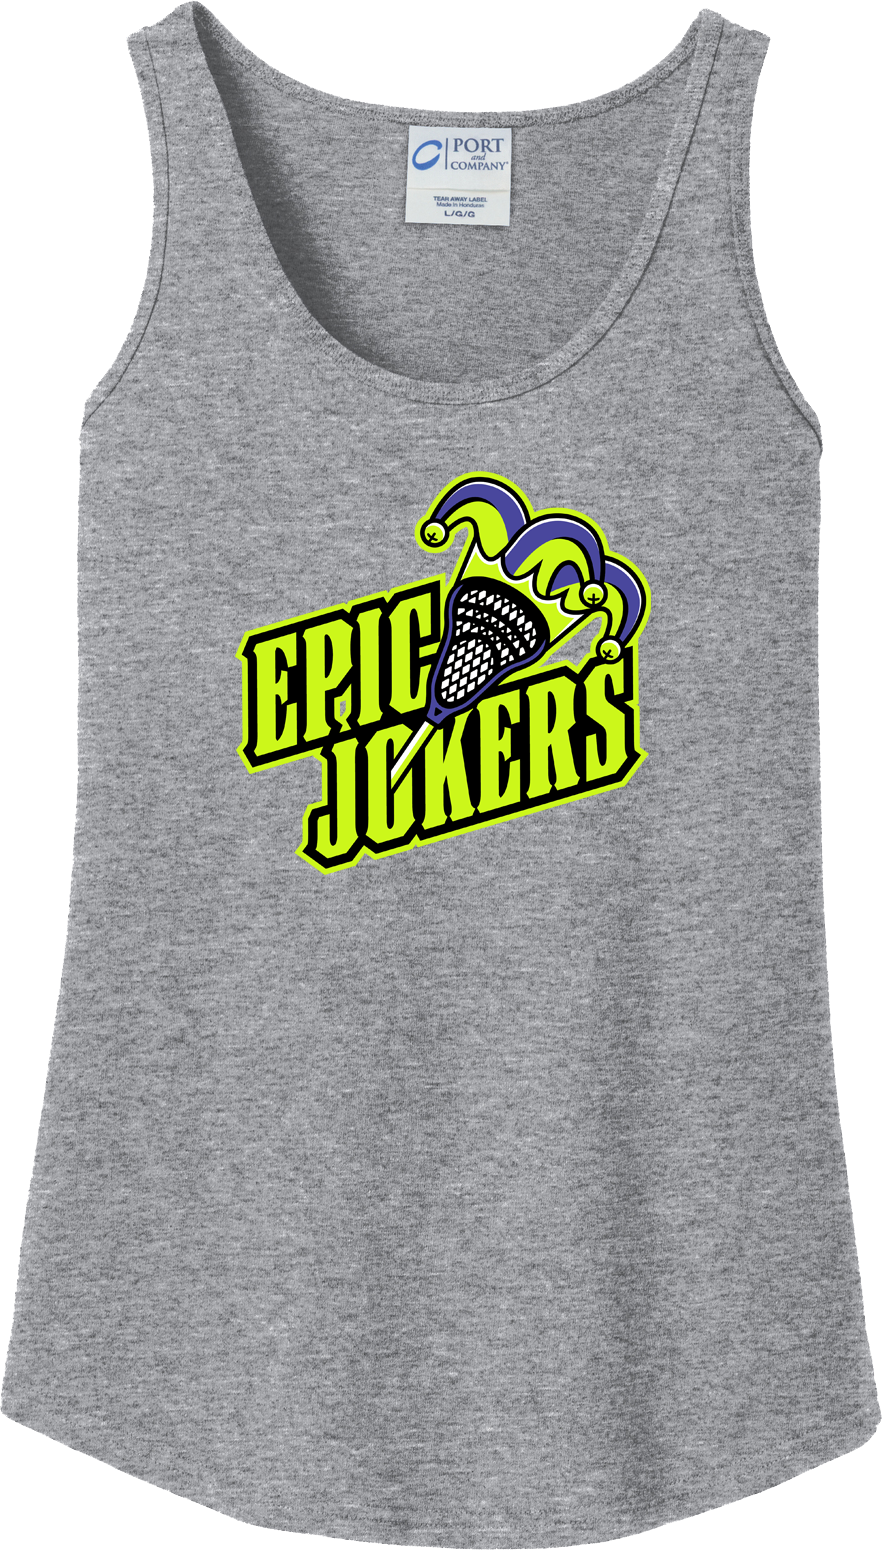 Epic Lacrosse Jokers Women's Grey Tank Top